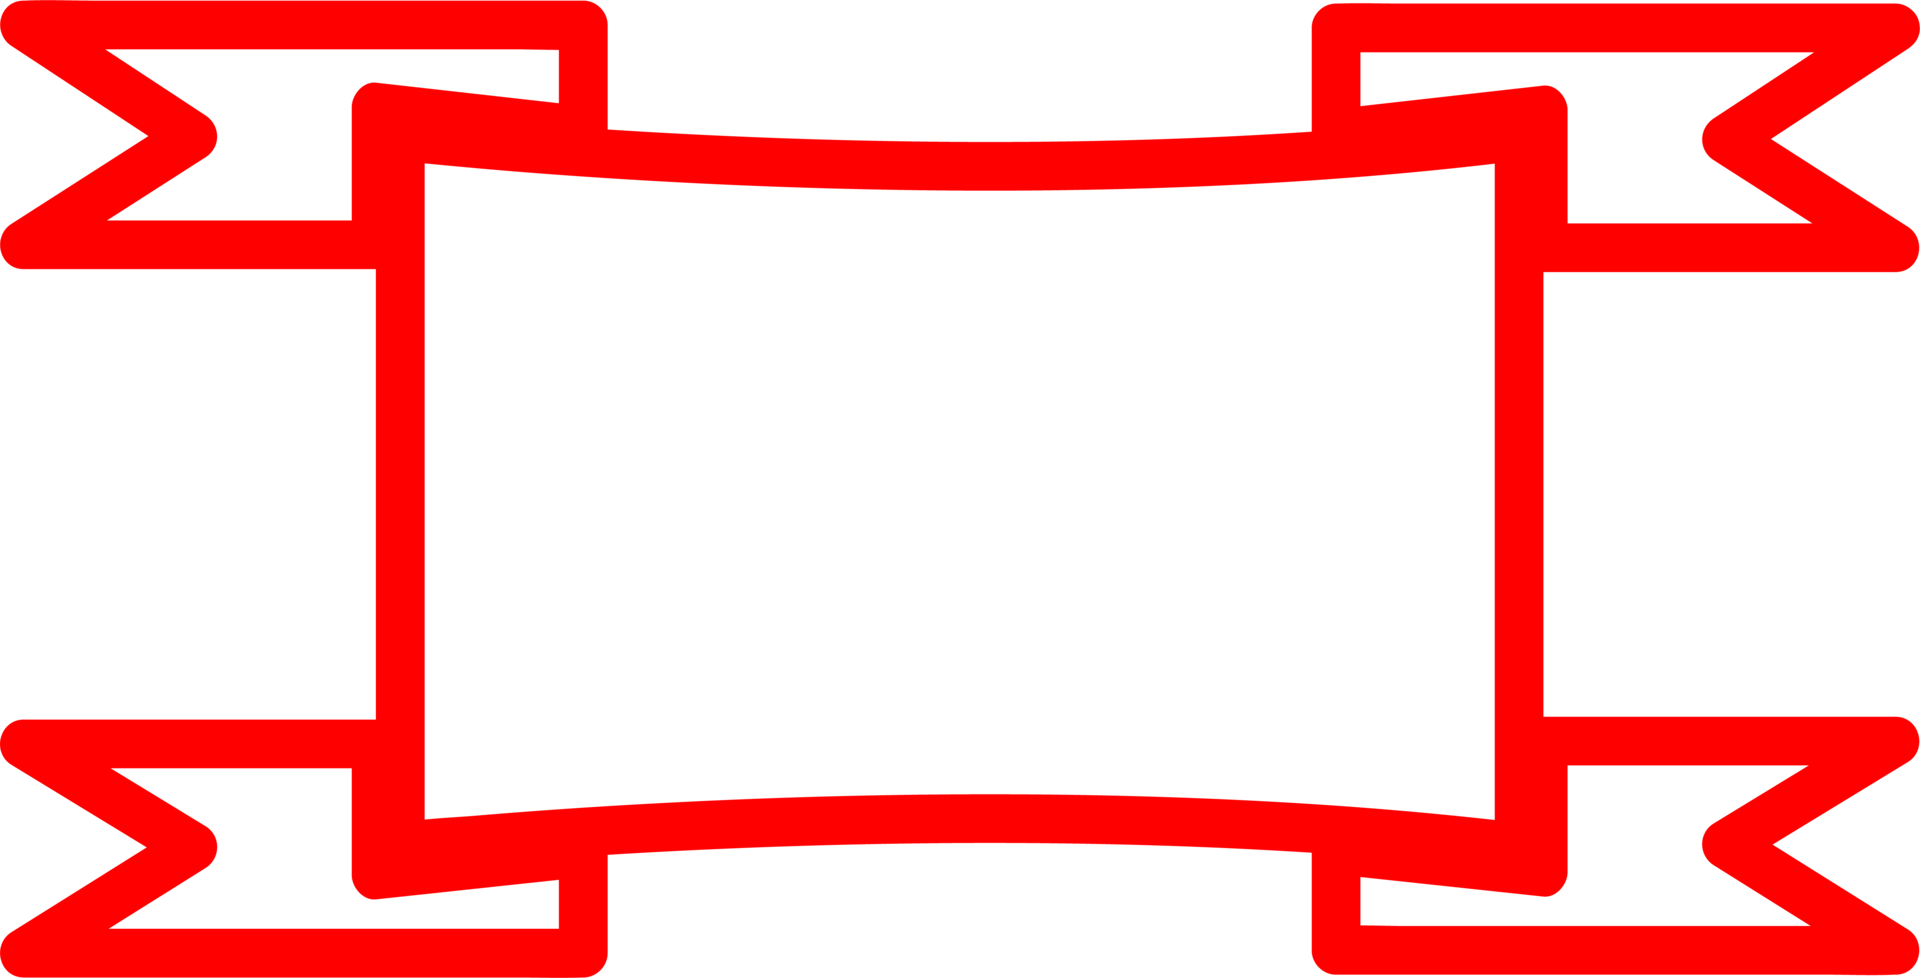 disegno di simbolo del segno dell'icona del nastro png